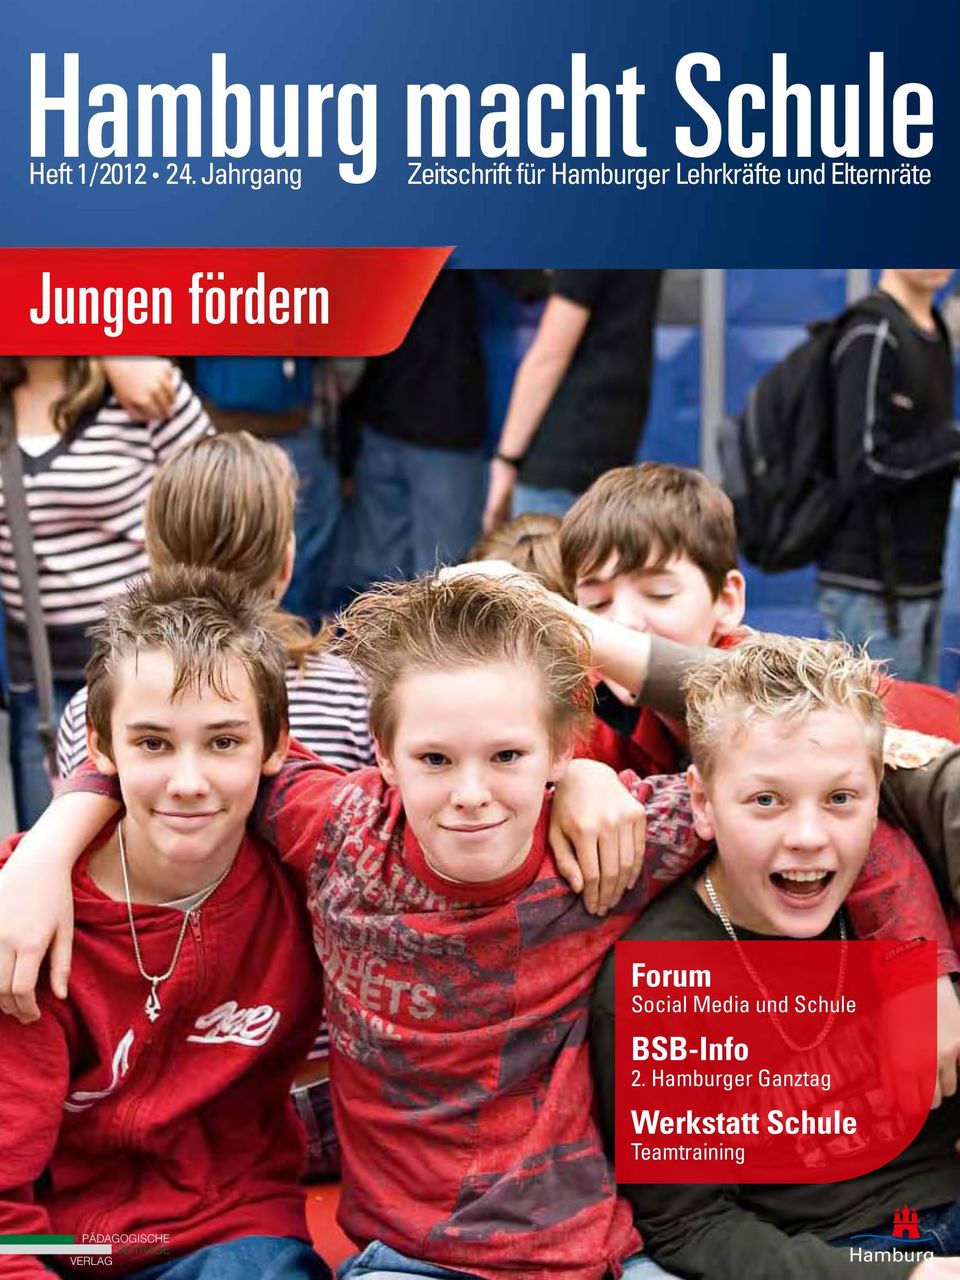 Jungen fördern Forum Social Media und Schule BSB-Info 2.